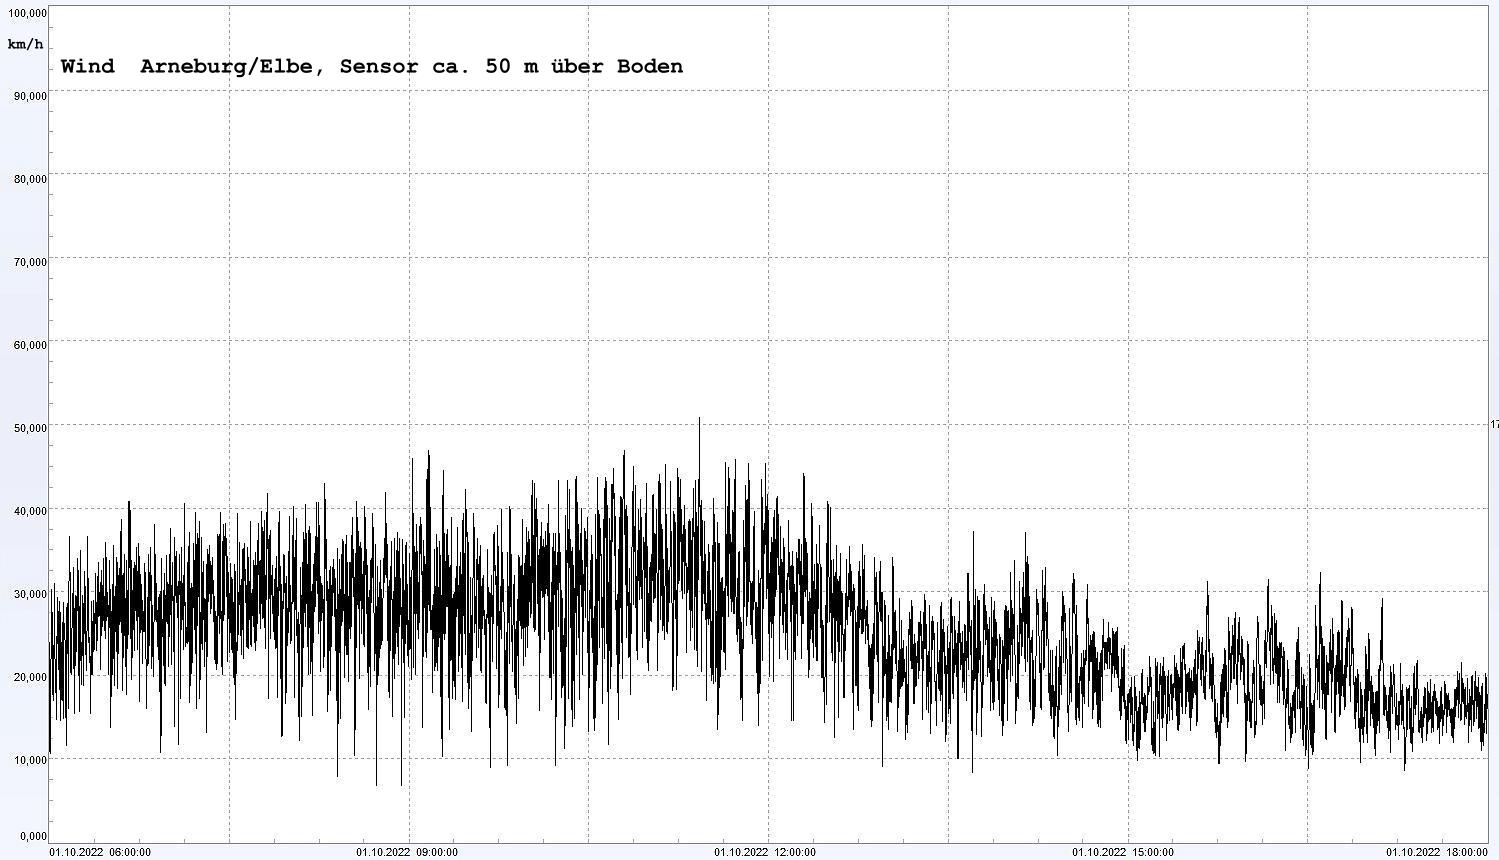 Arneburg Winddaten 01. Oktober 2022, ab 06:00 Uhr, 12 Stunden
  Sensor auf Gebude, ca. 50 m ber Erdboden, 5s-Aufzeichnung